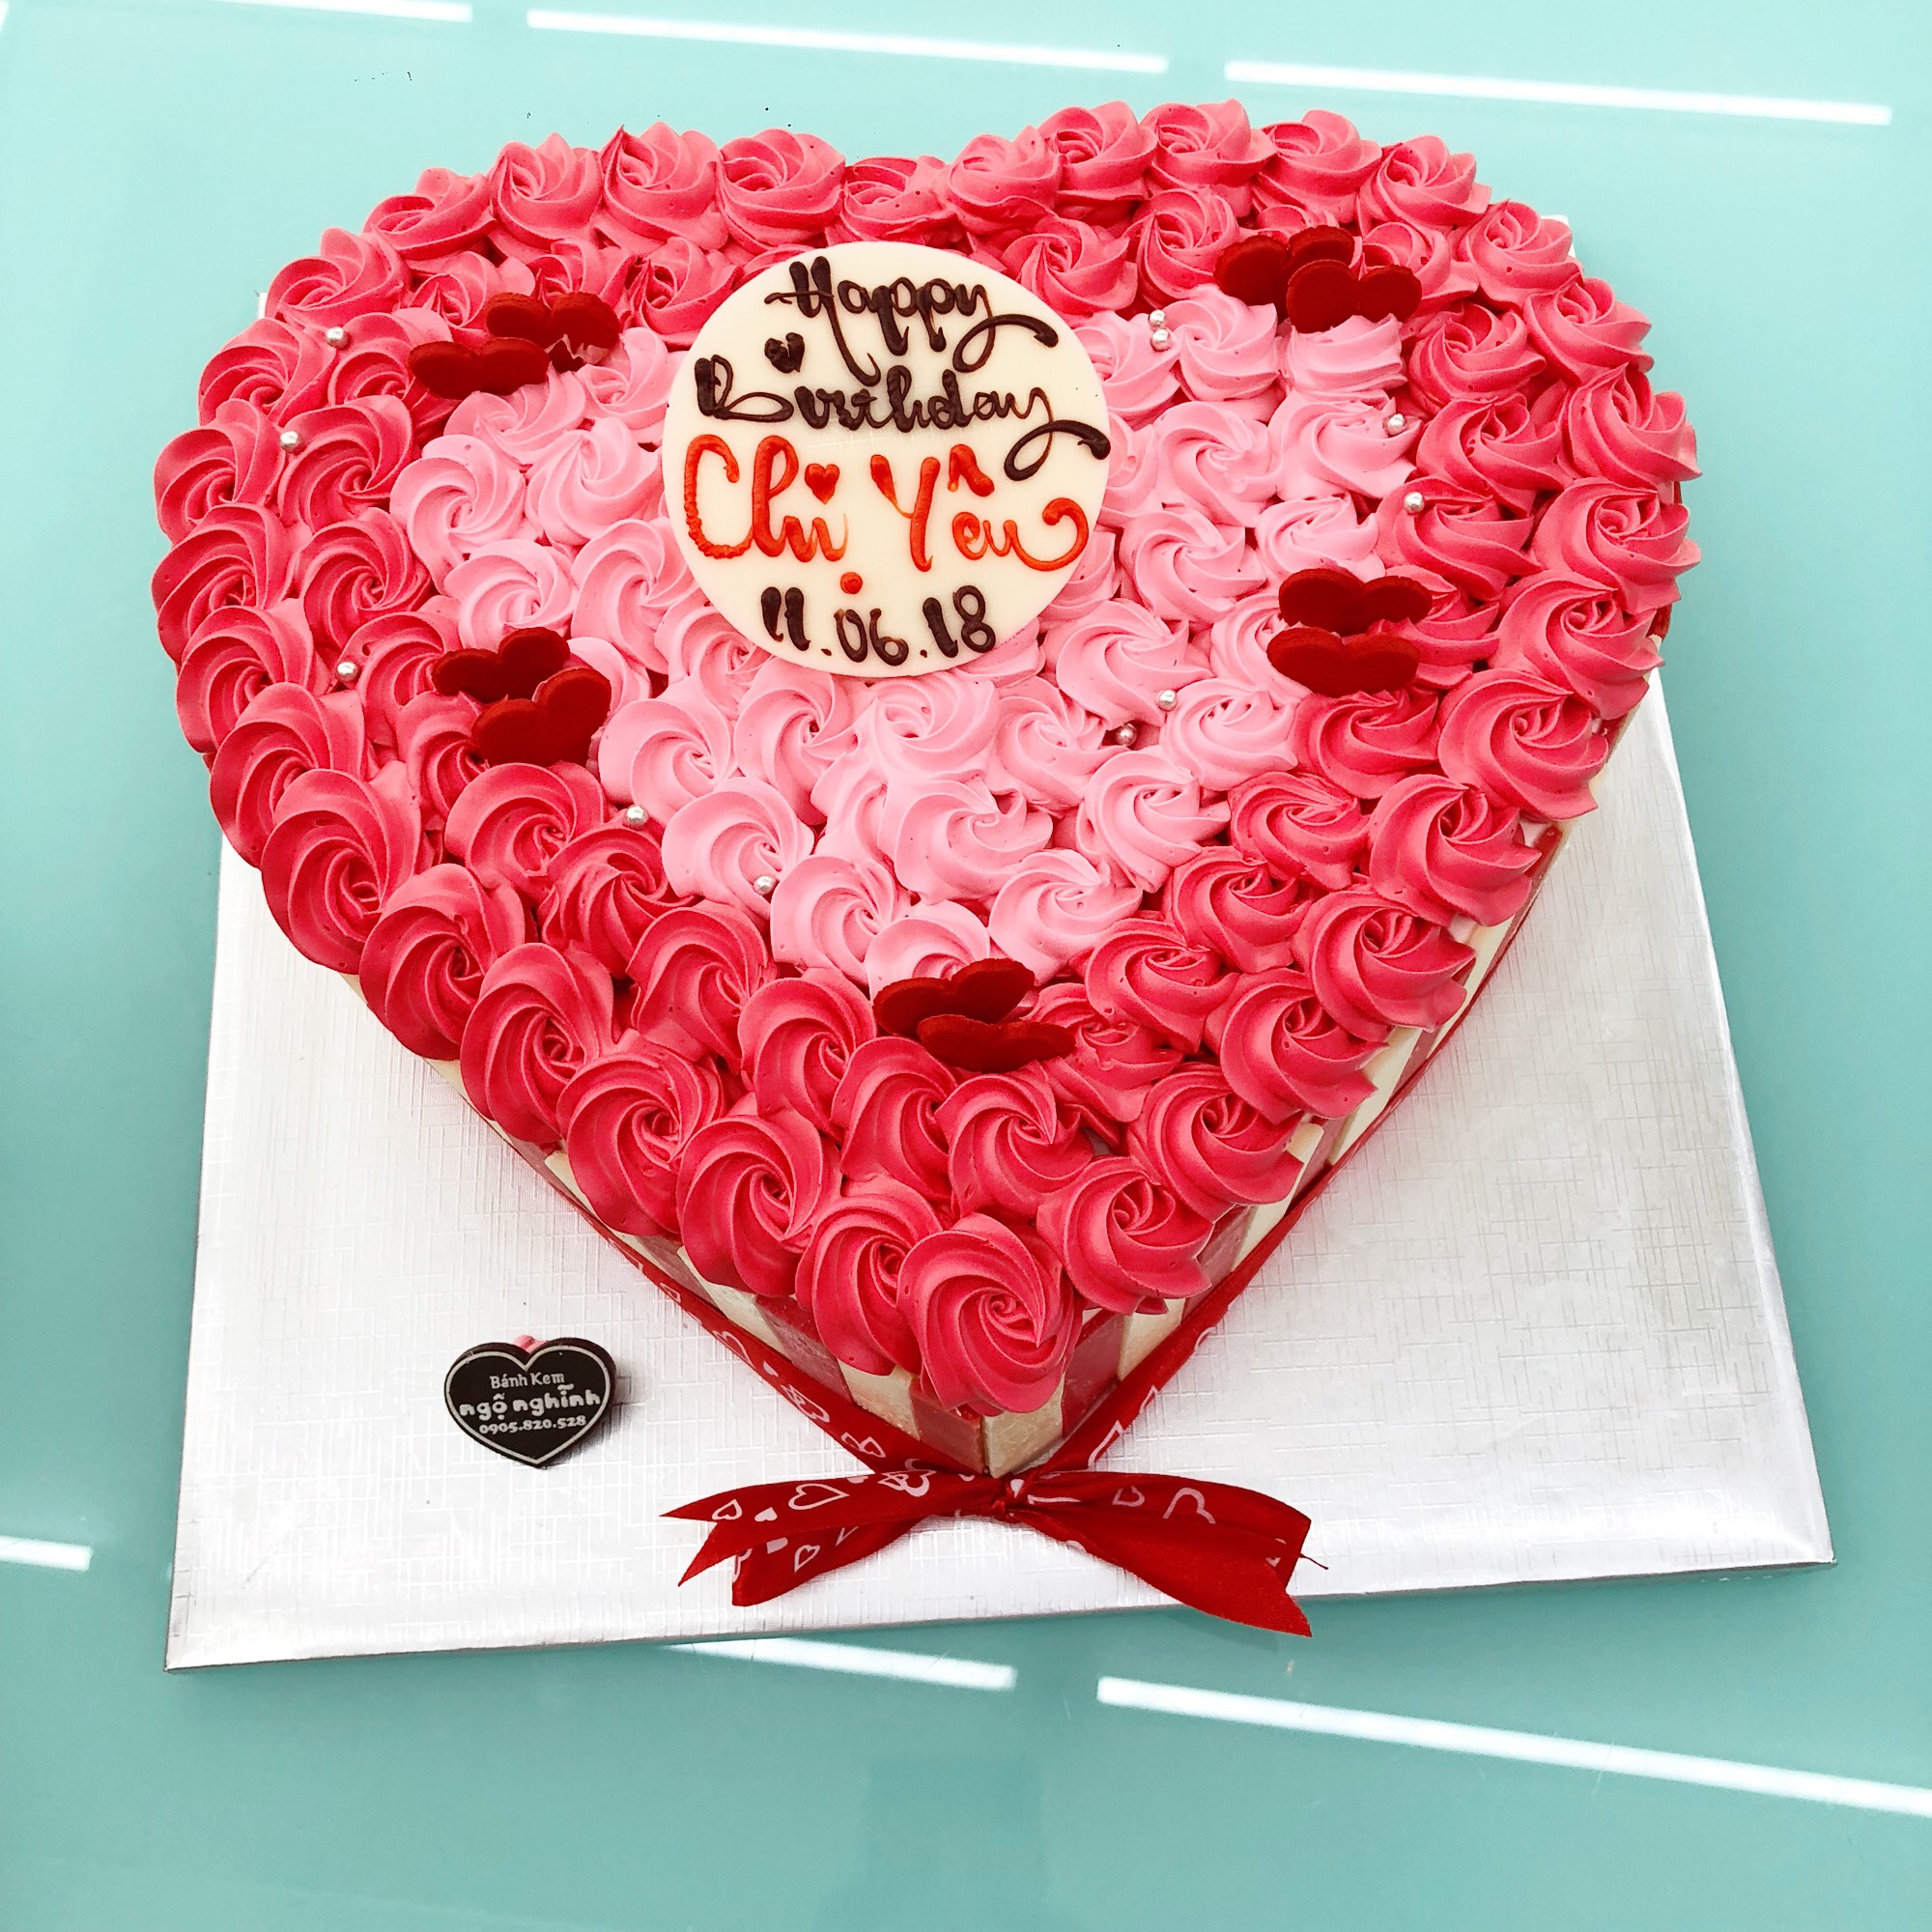 Bánh sinh nhật tạo hình trái tim hoa hồng đẹp mắt hấp dẫn ngọt ...